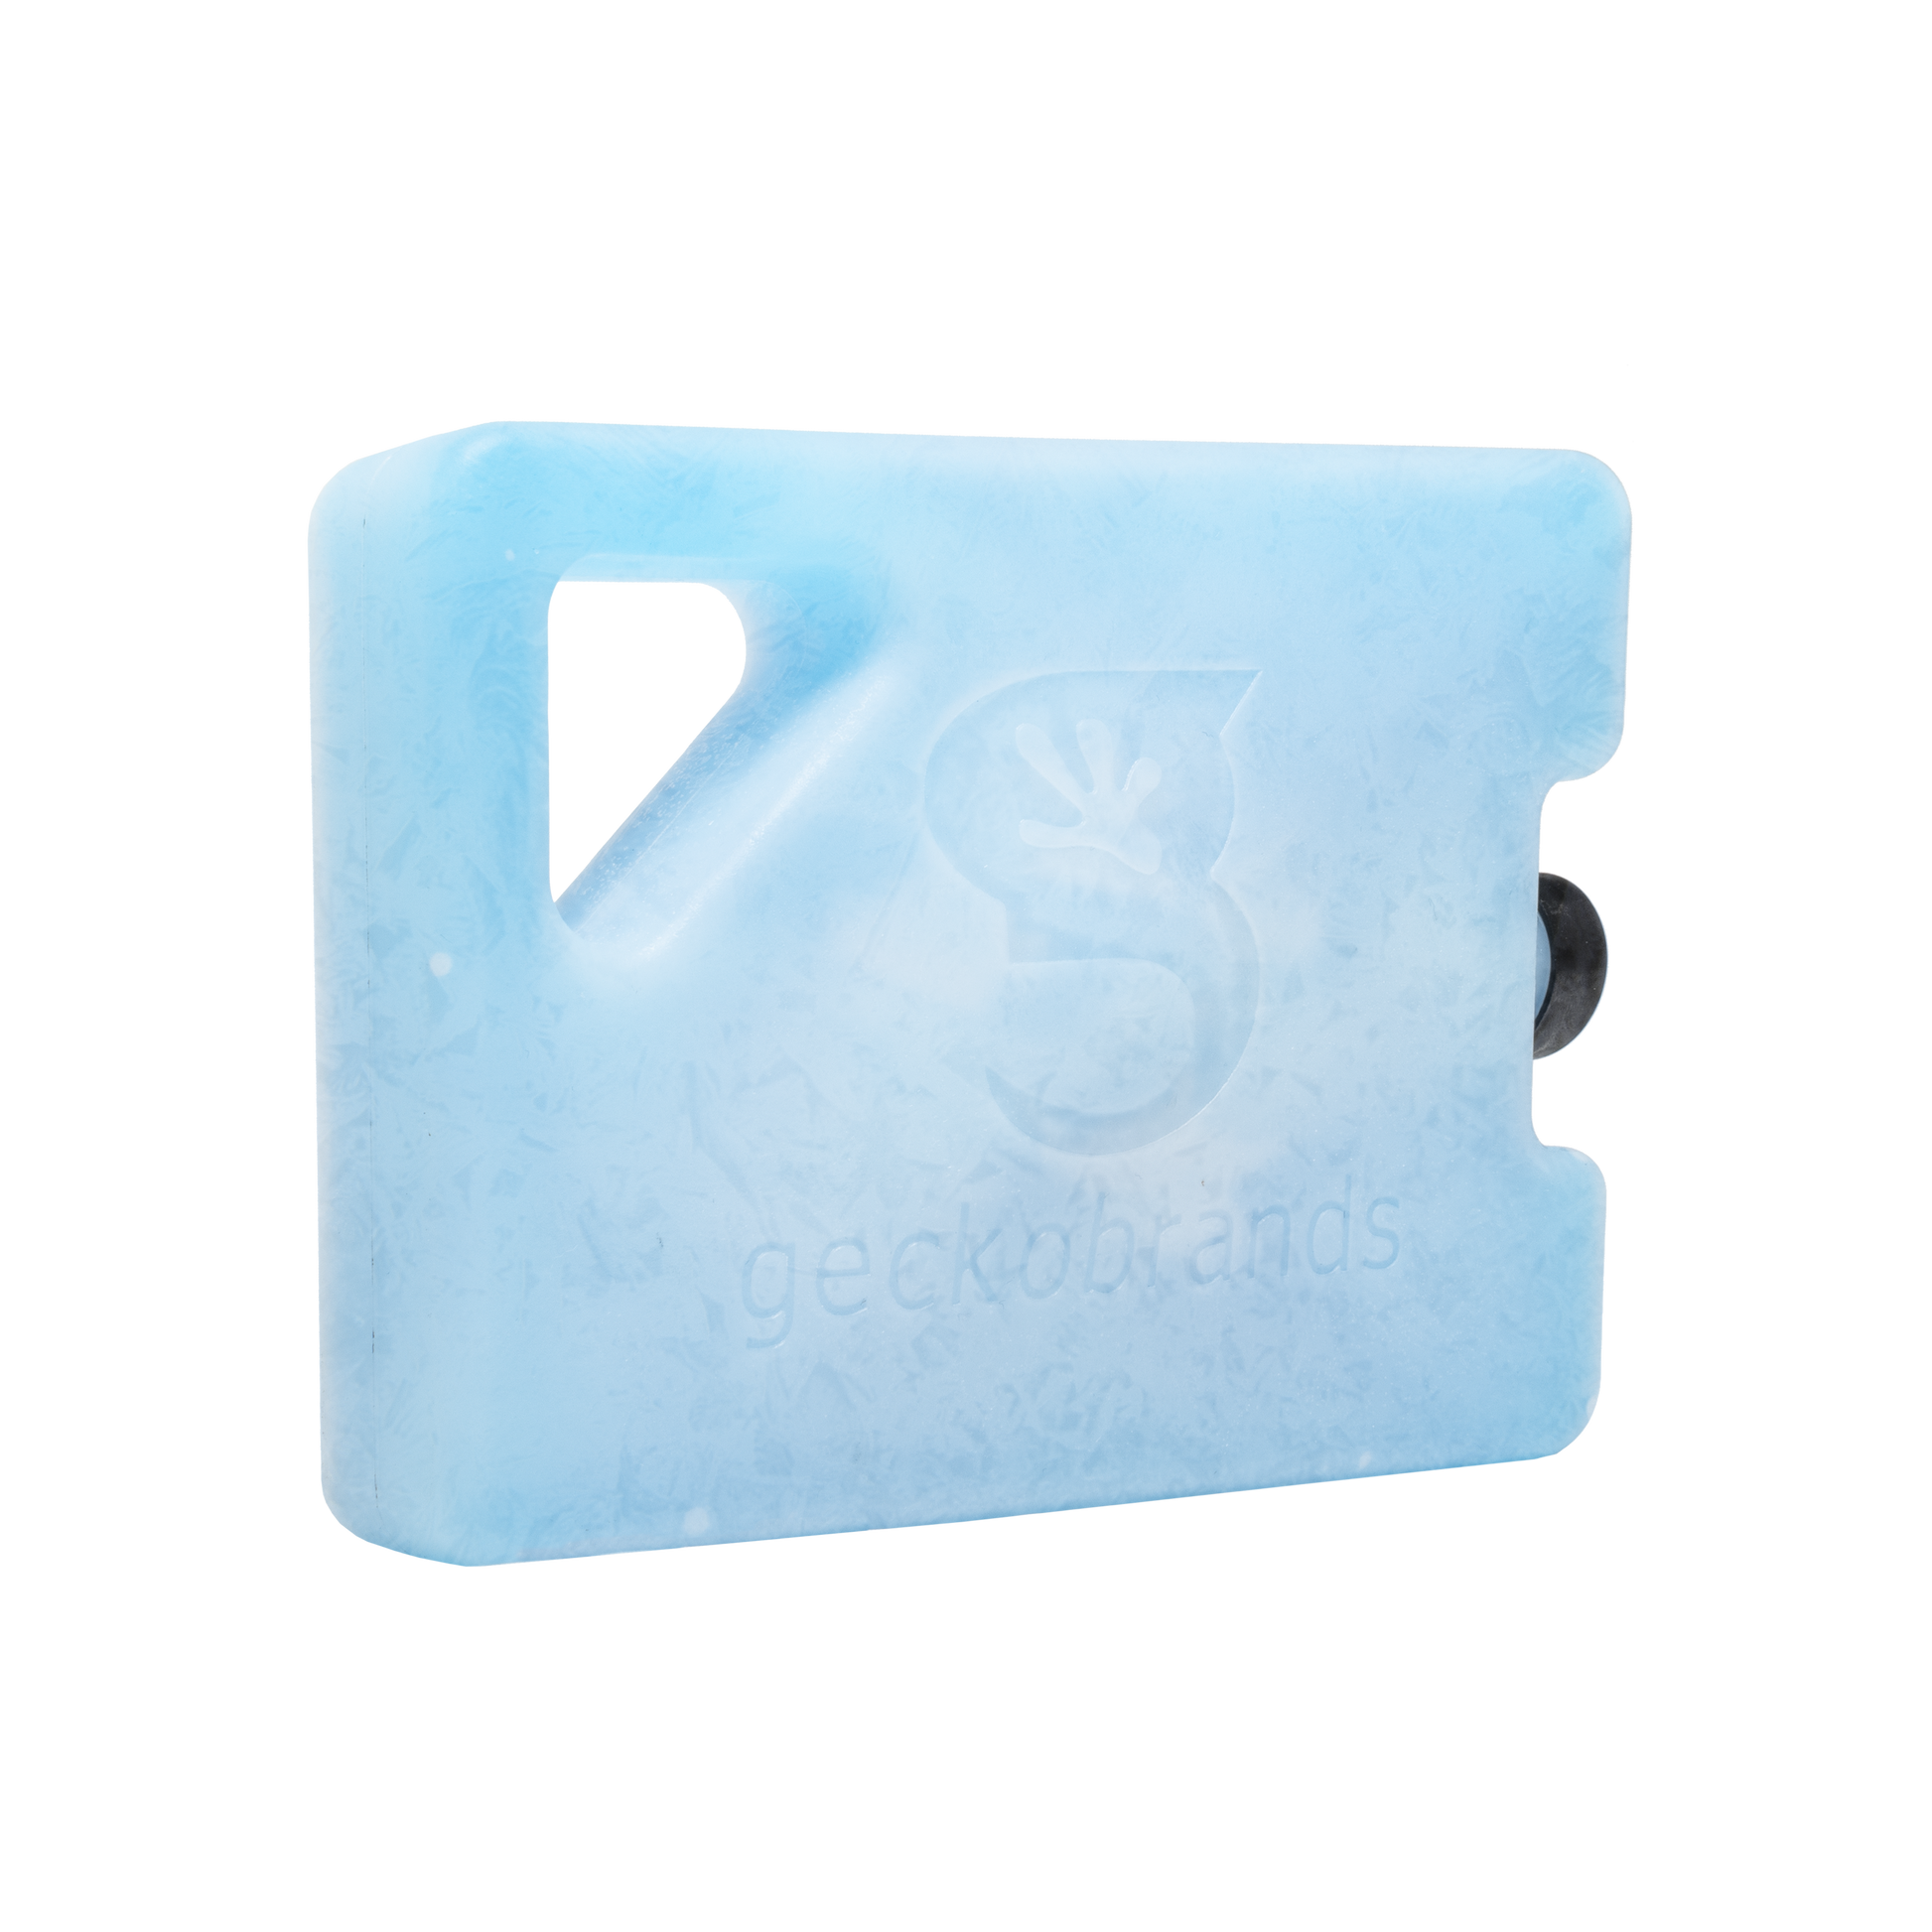 ICE BAG BIG SIZE 52X27 (20.47x10.63) - ORANGE STRIPES - Each